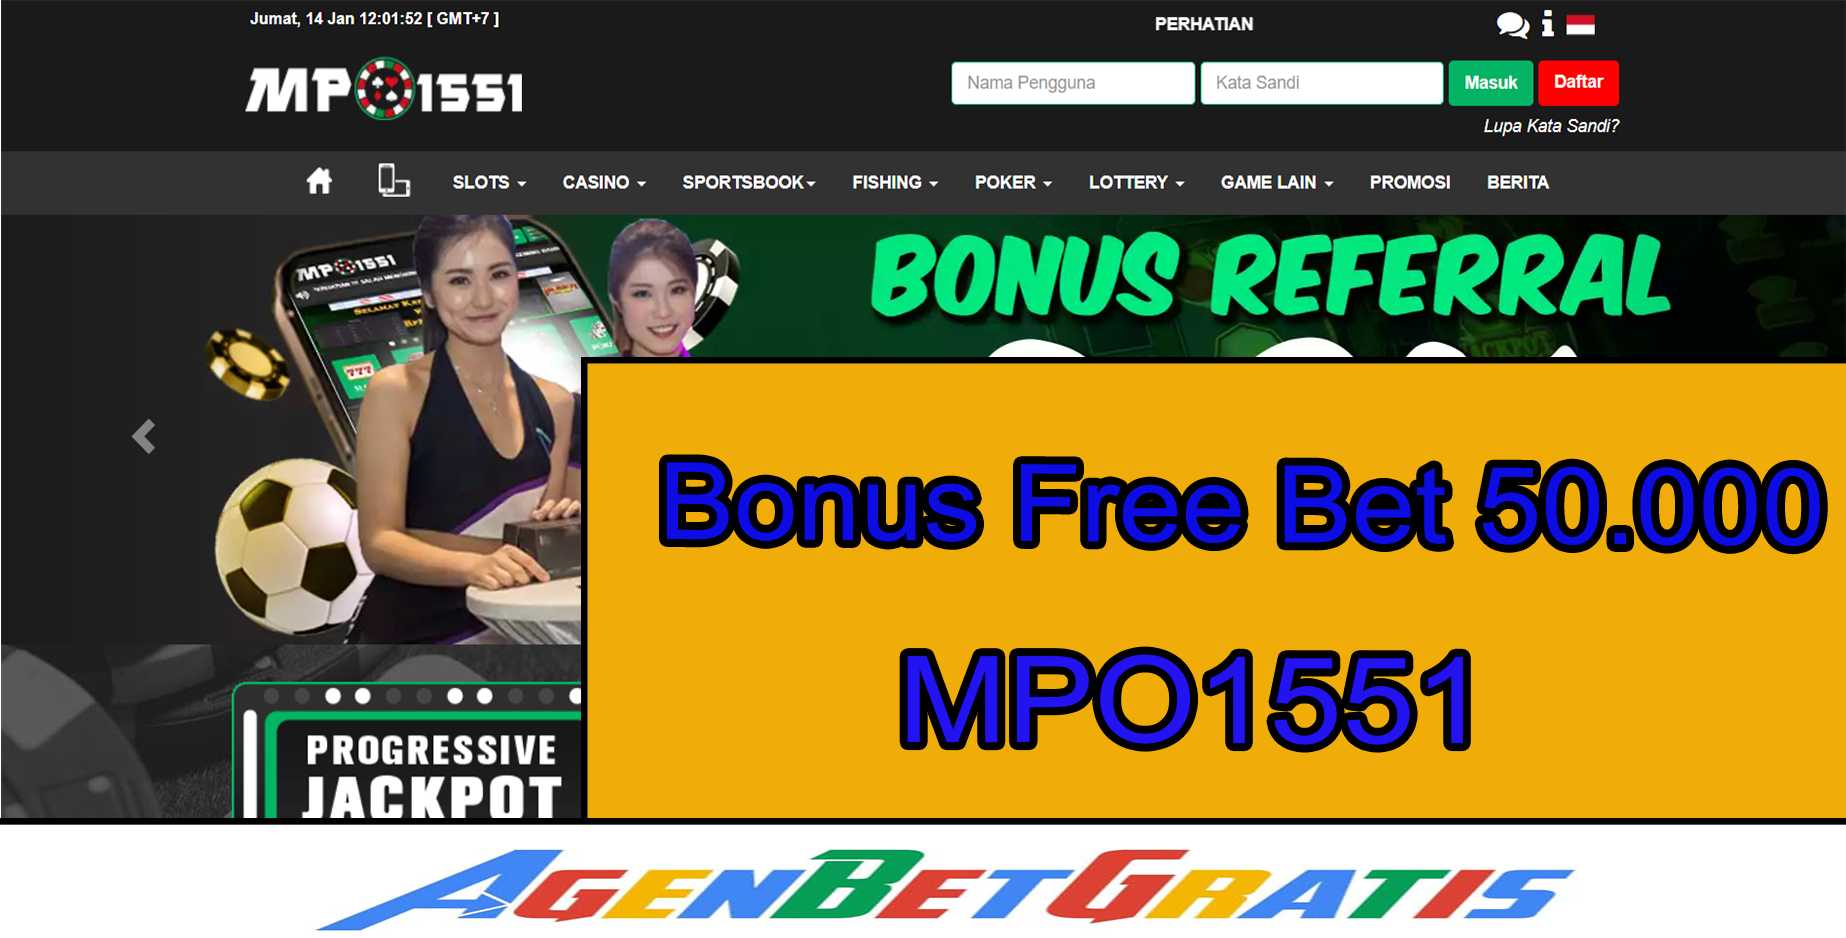 MPO1551 - Bonus Free Bet 50.000